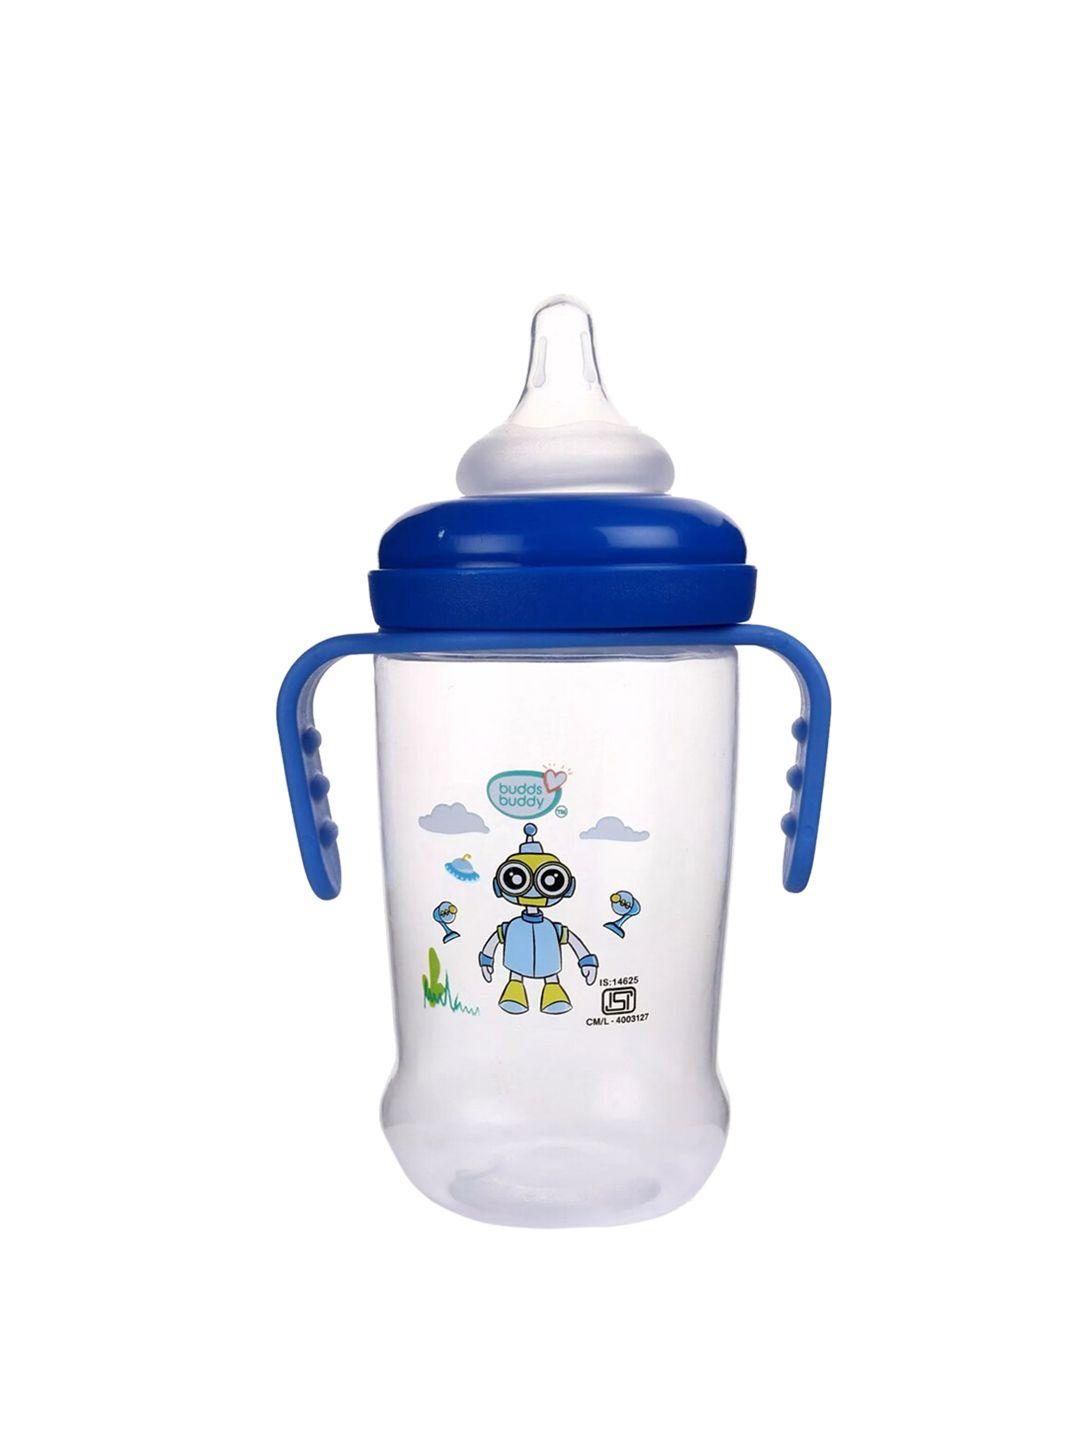 buddsbuddy blue feeding bottle with handle 250 ml